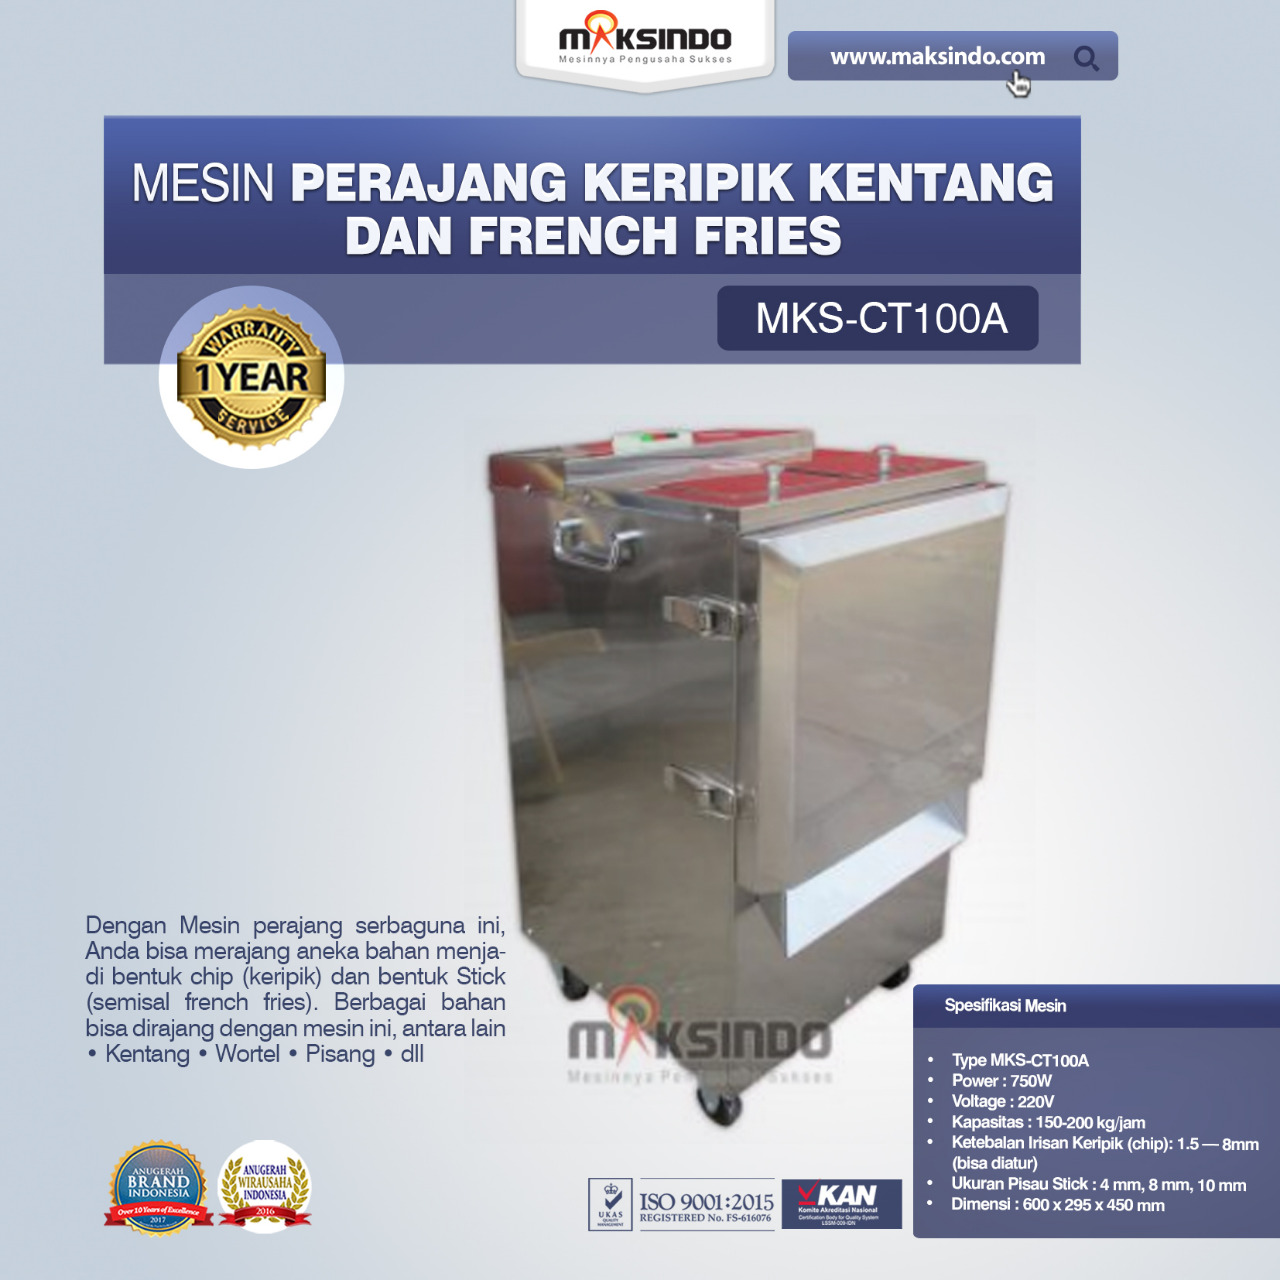 Jual Mesin Perajang Keripik Kentang dan French Fries – MKS-CT100A di Banjarmasin